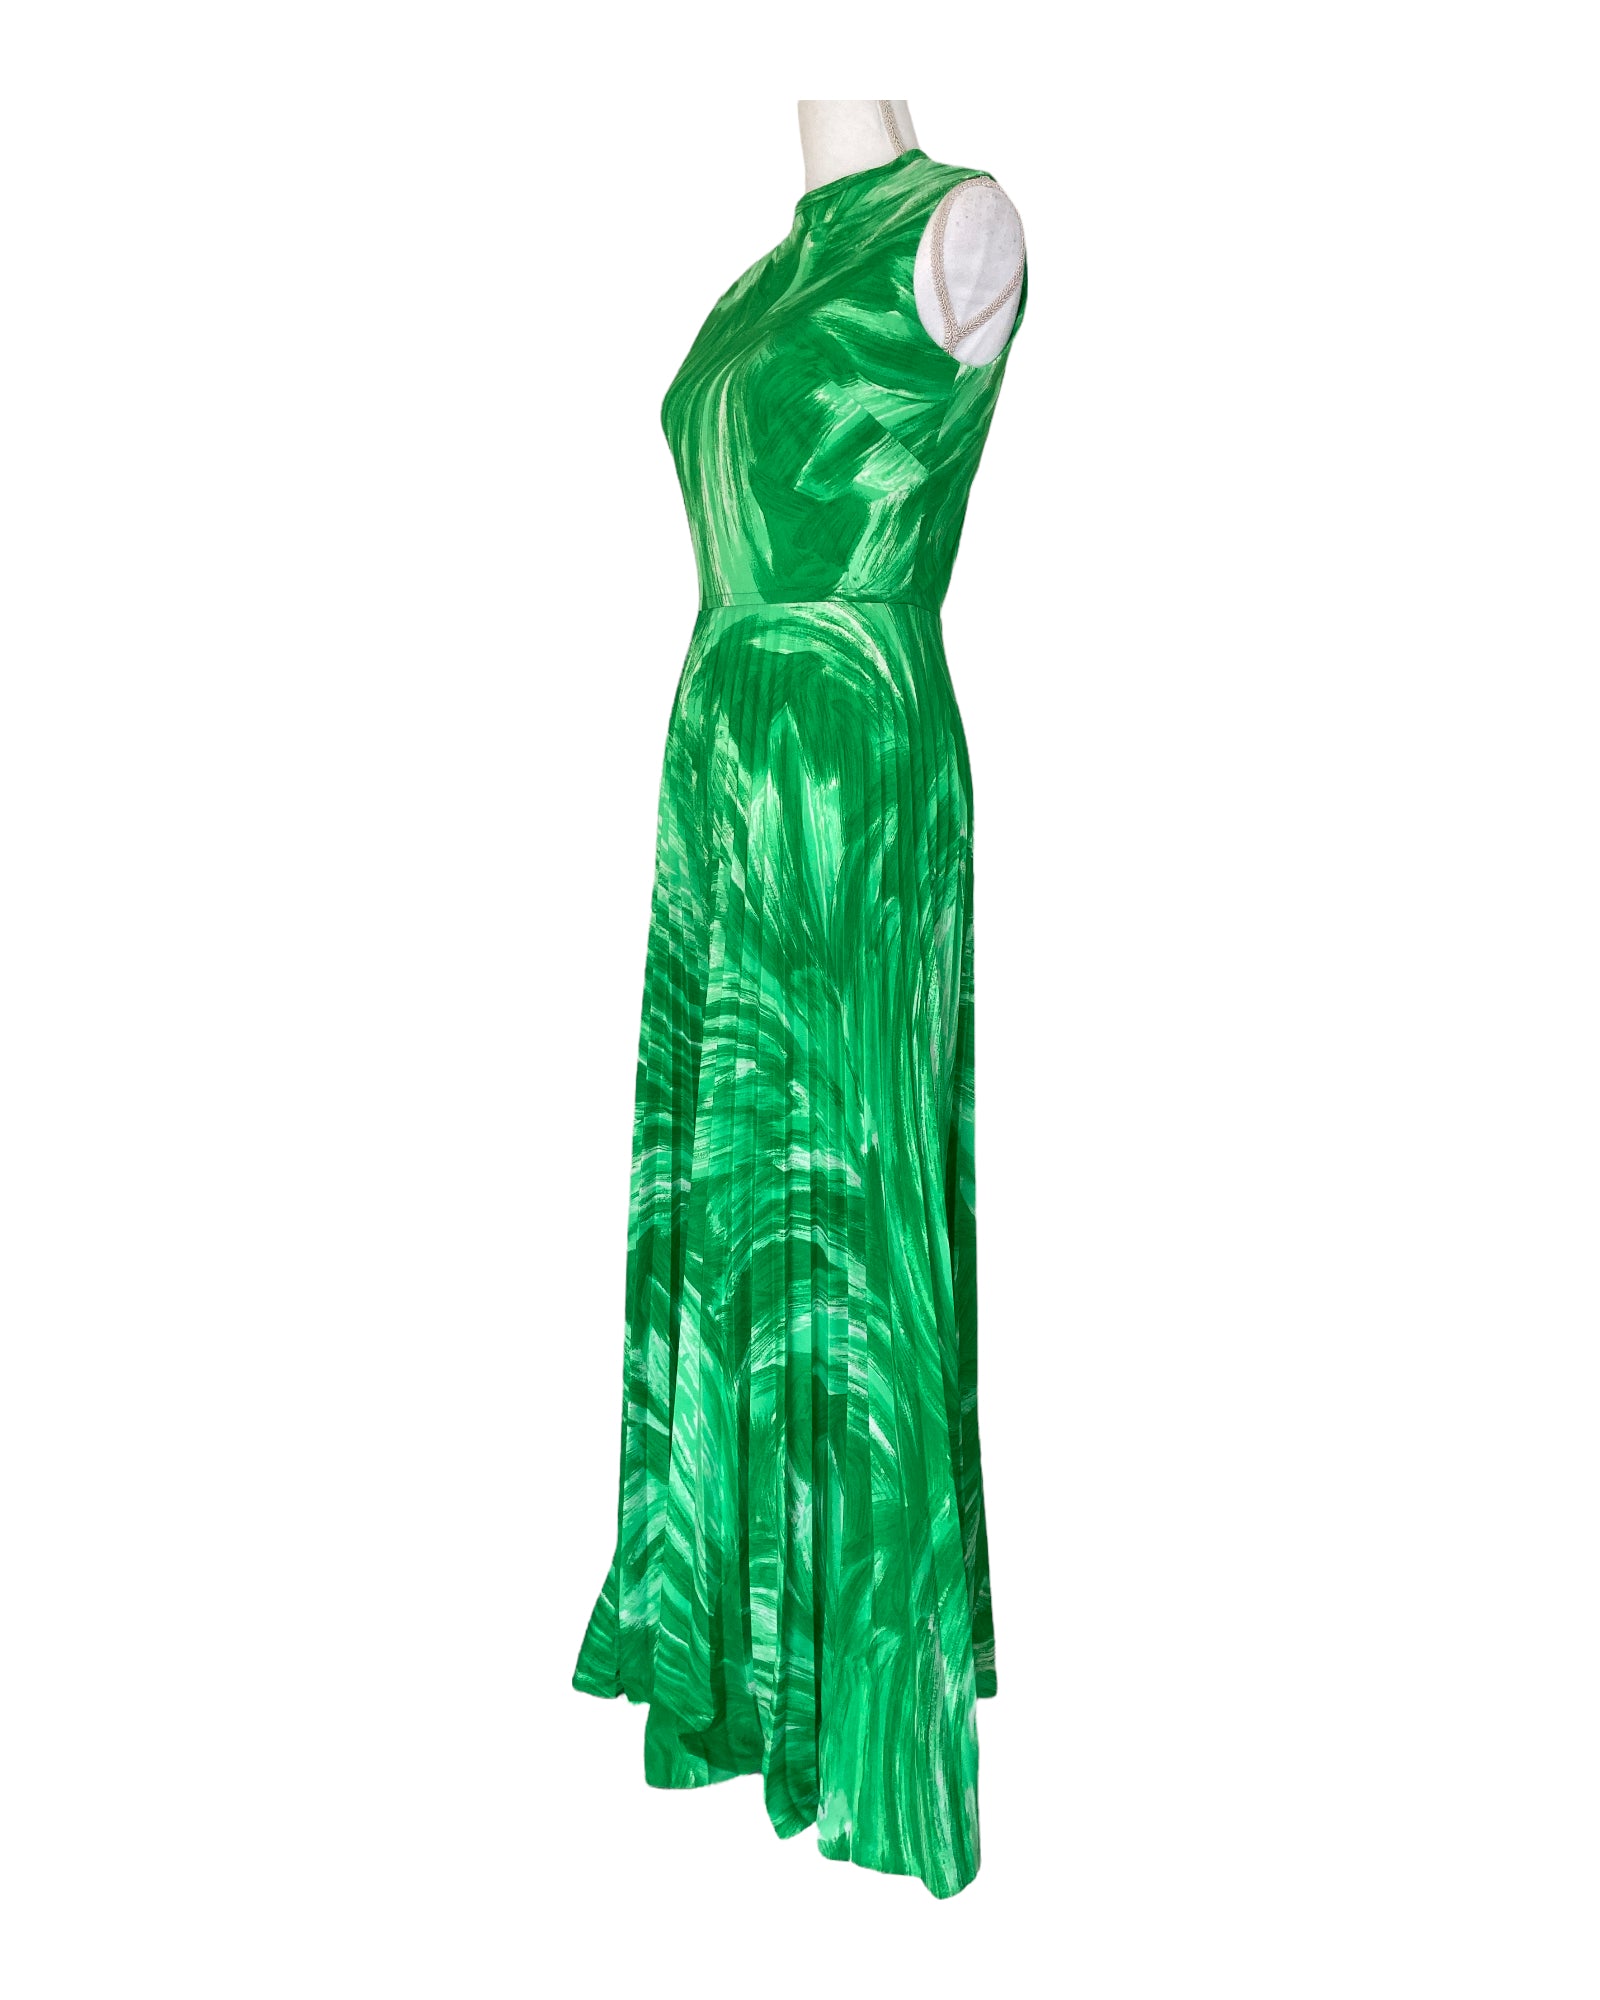 Nancy Greer Vintage Green Floor Length Jacket and Dress, S